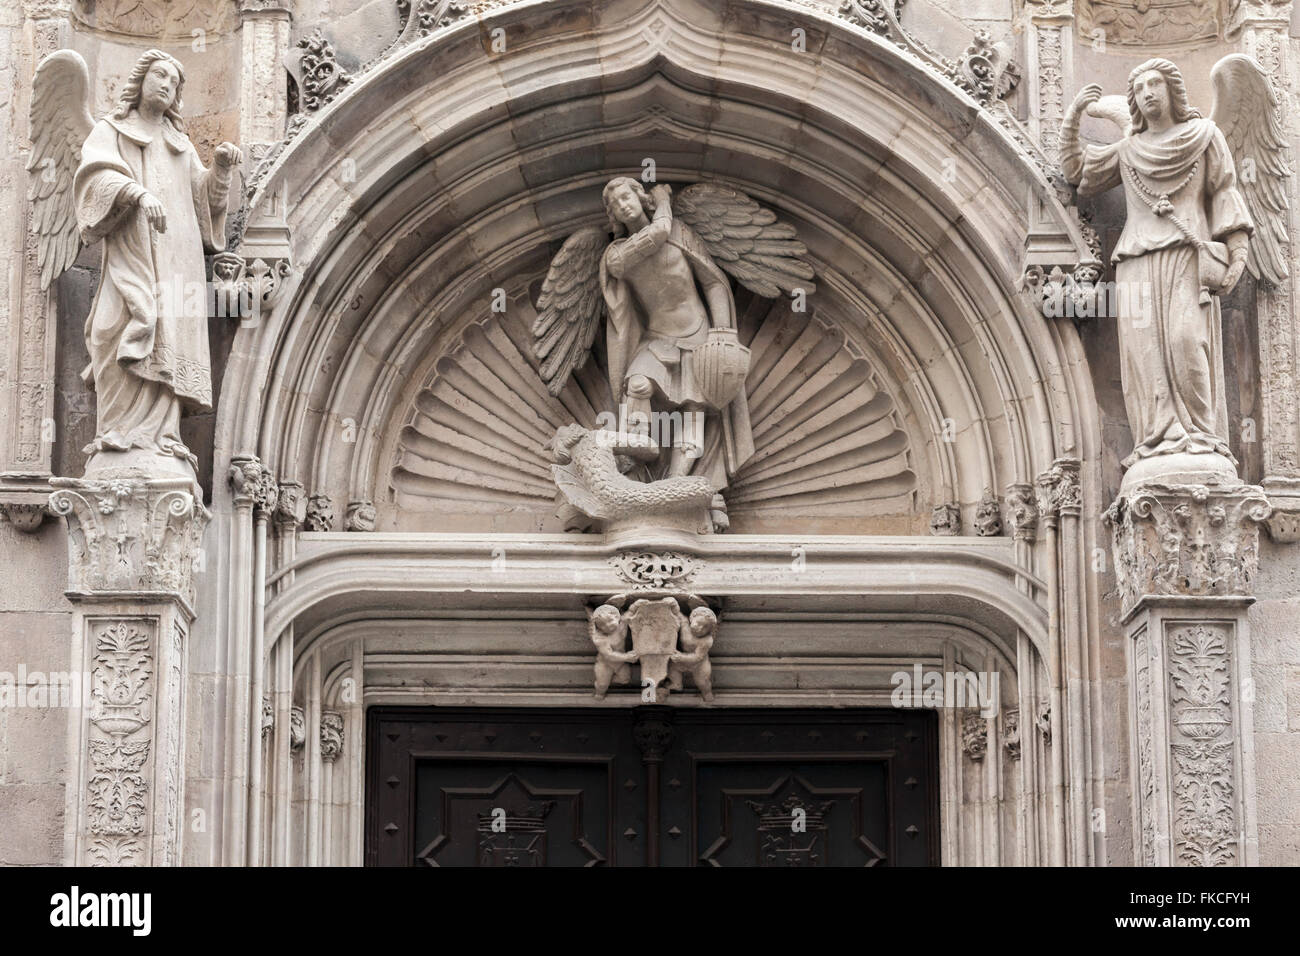 Dettaglio della porta d'ingresso alla Basilica de la Mercè, stile barocco. Barcellona. Foto Stock